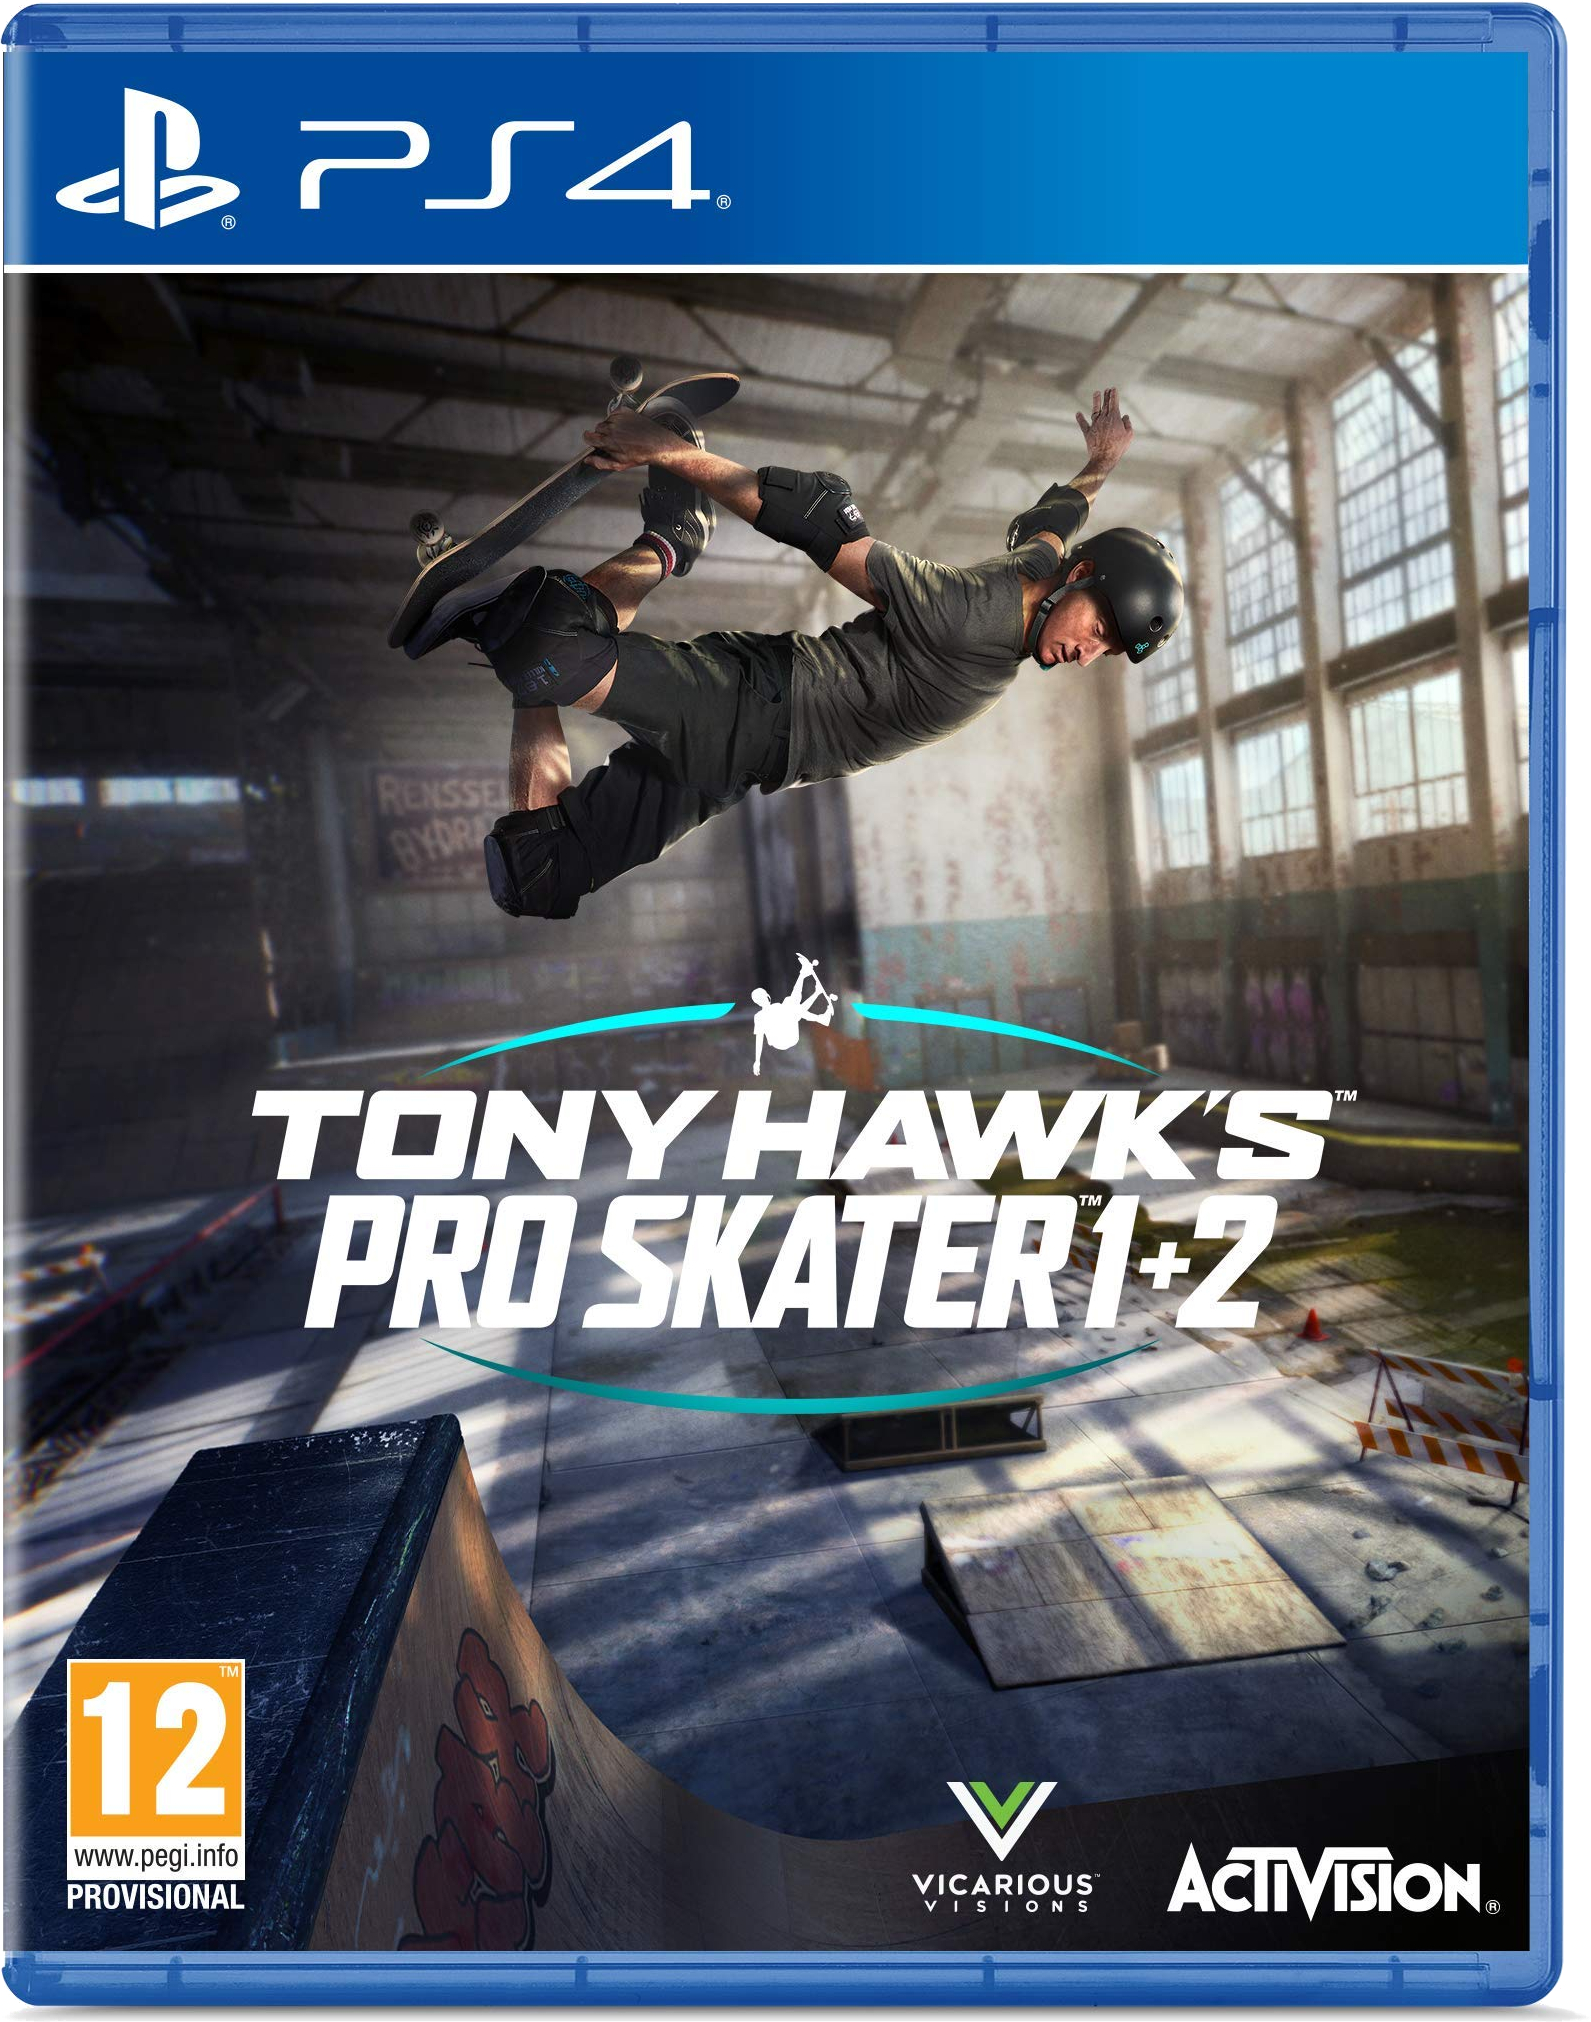 Tony Hawks Pro Skater 1+2 Cover